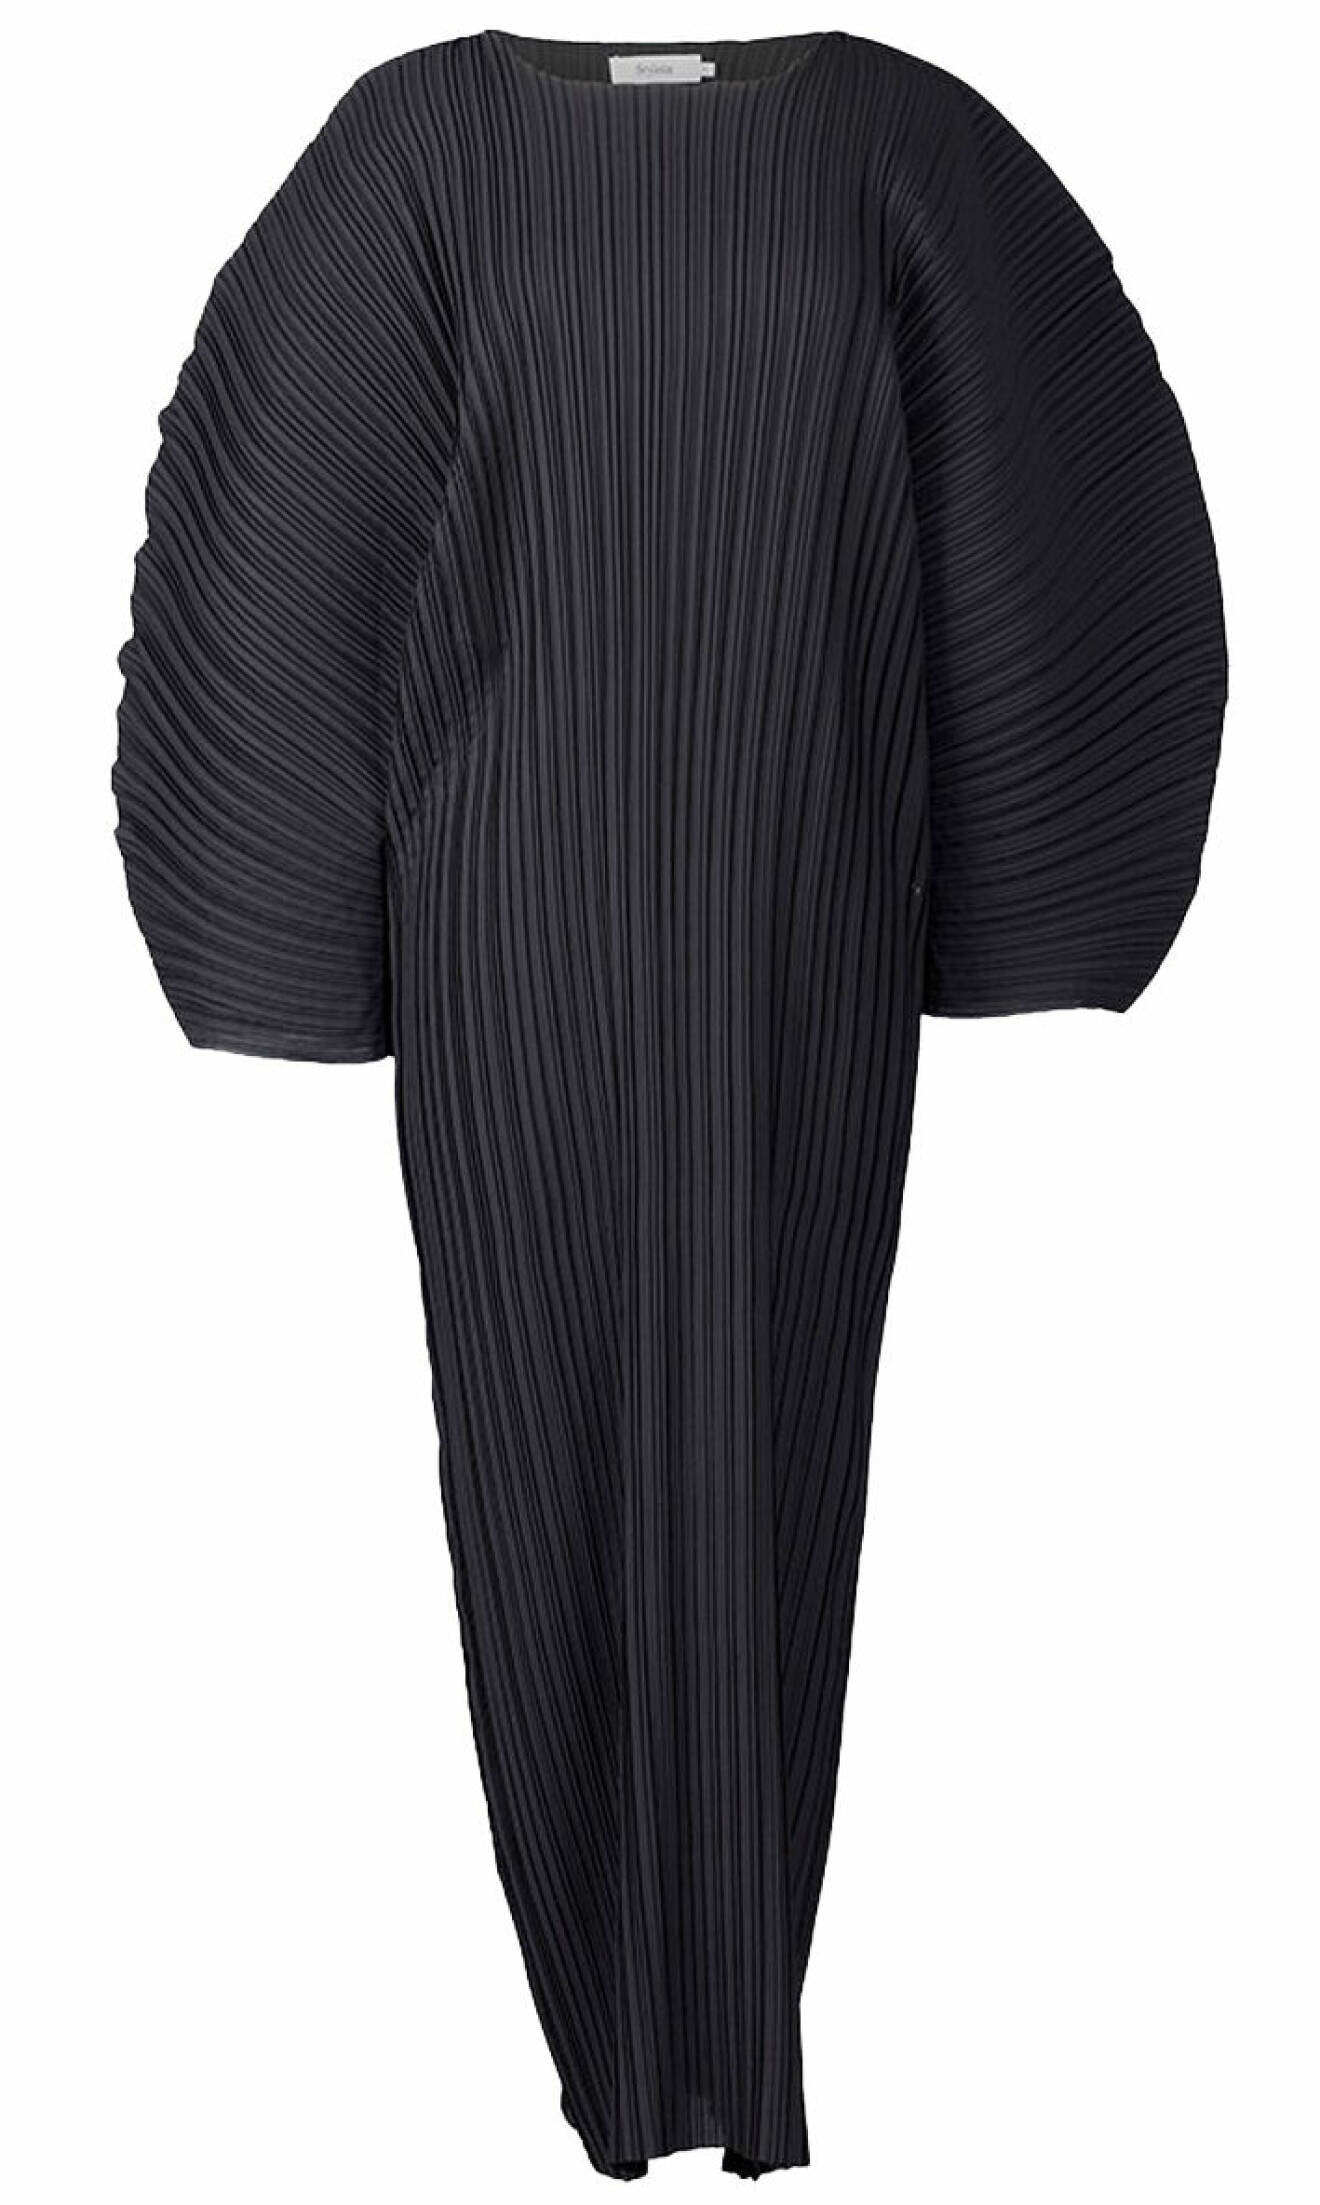 svart plisserad klänning från stylein.